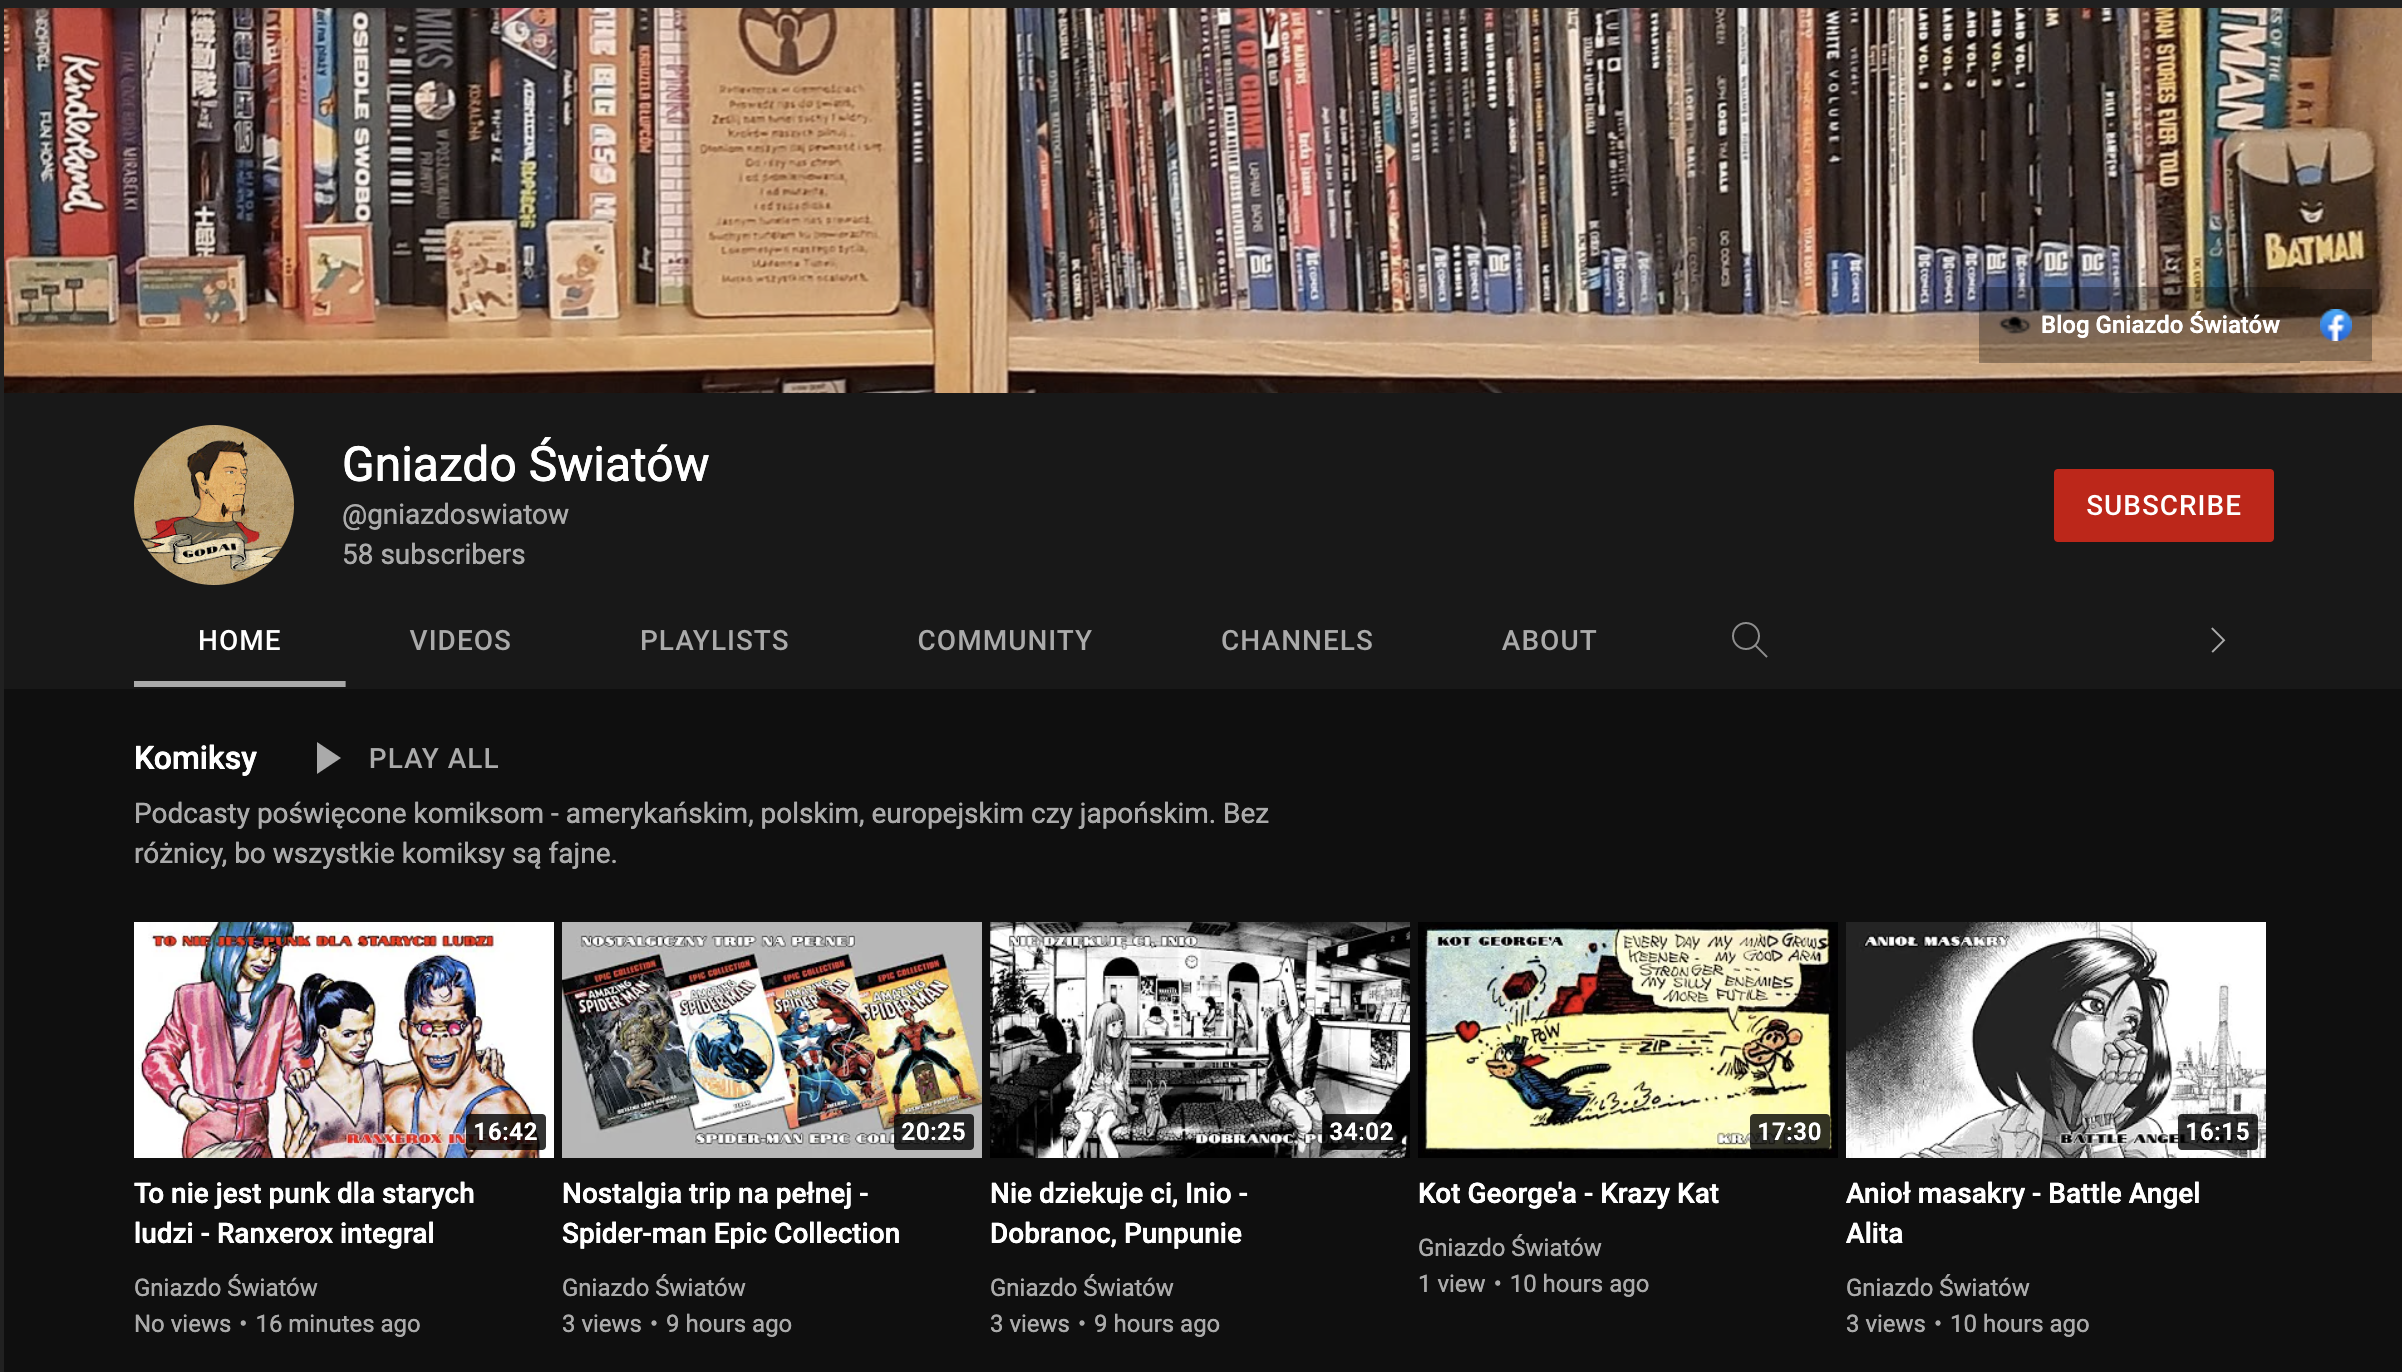 Zrzut ekranu kanału Gniazdo Światów w serwisie YouTube.